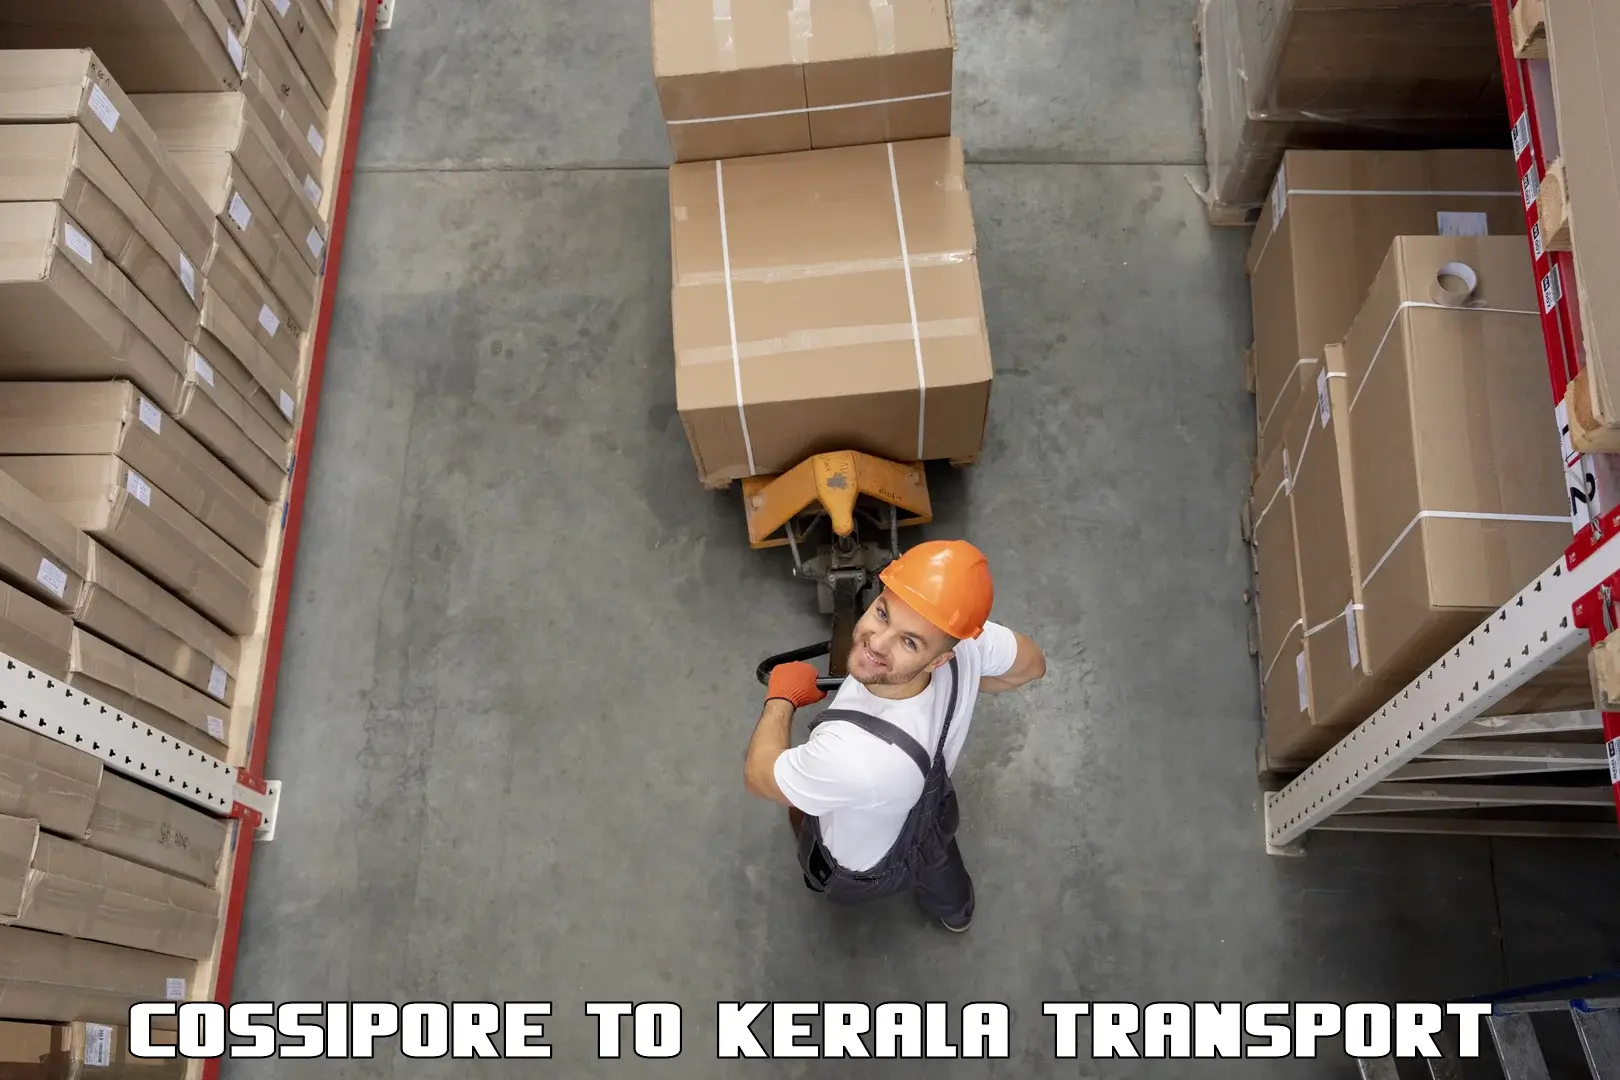 Part load transport service in India Cossipore to Cochin Port Kochi